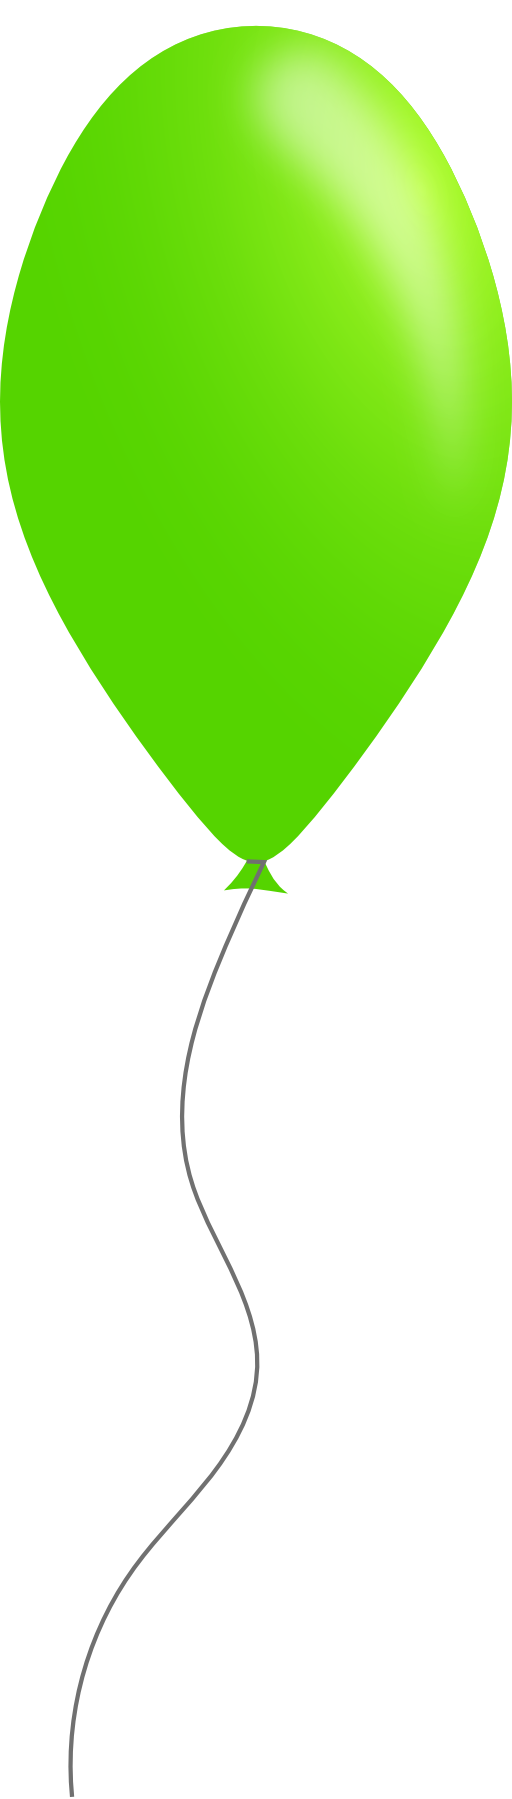 green balloon clip art - photo #48